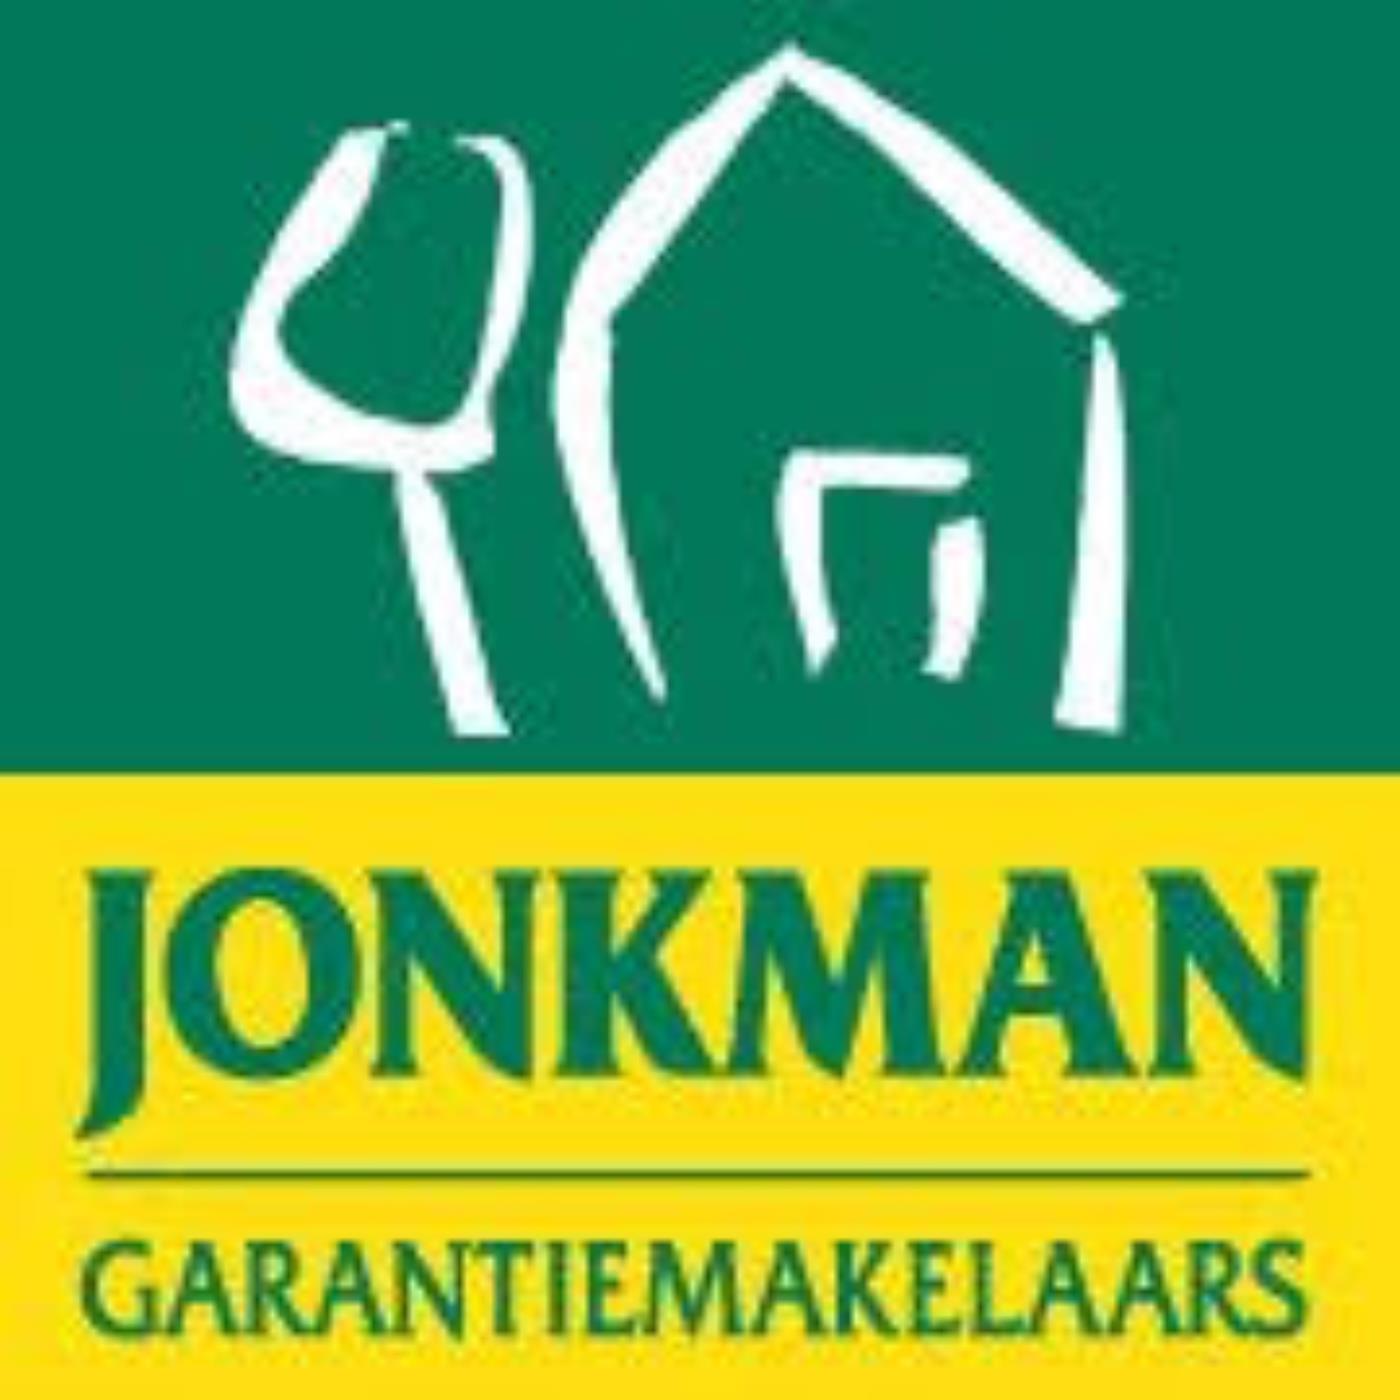 Logo Jonkman Garantiemakelaars